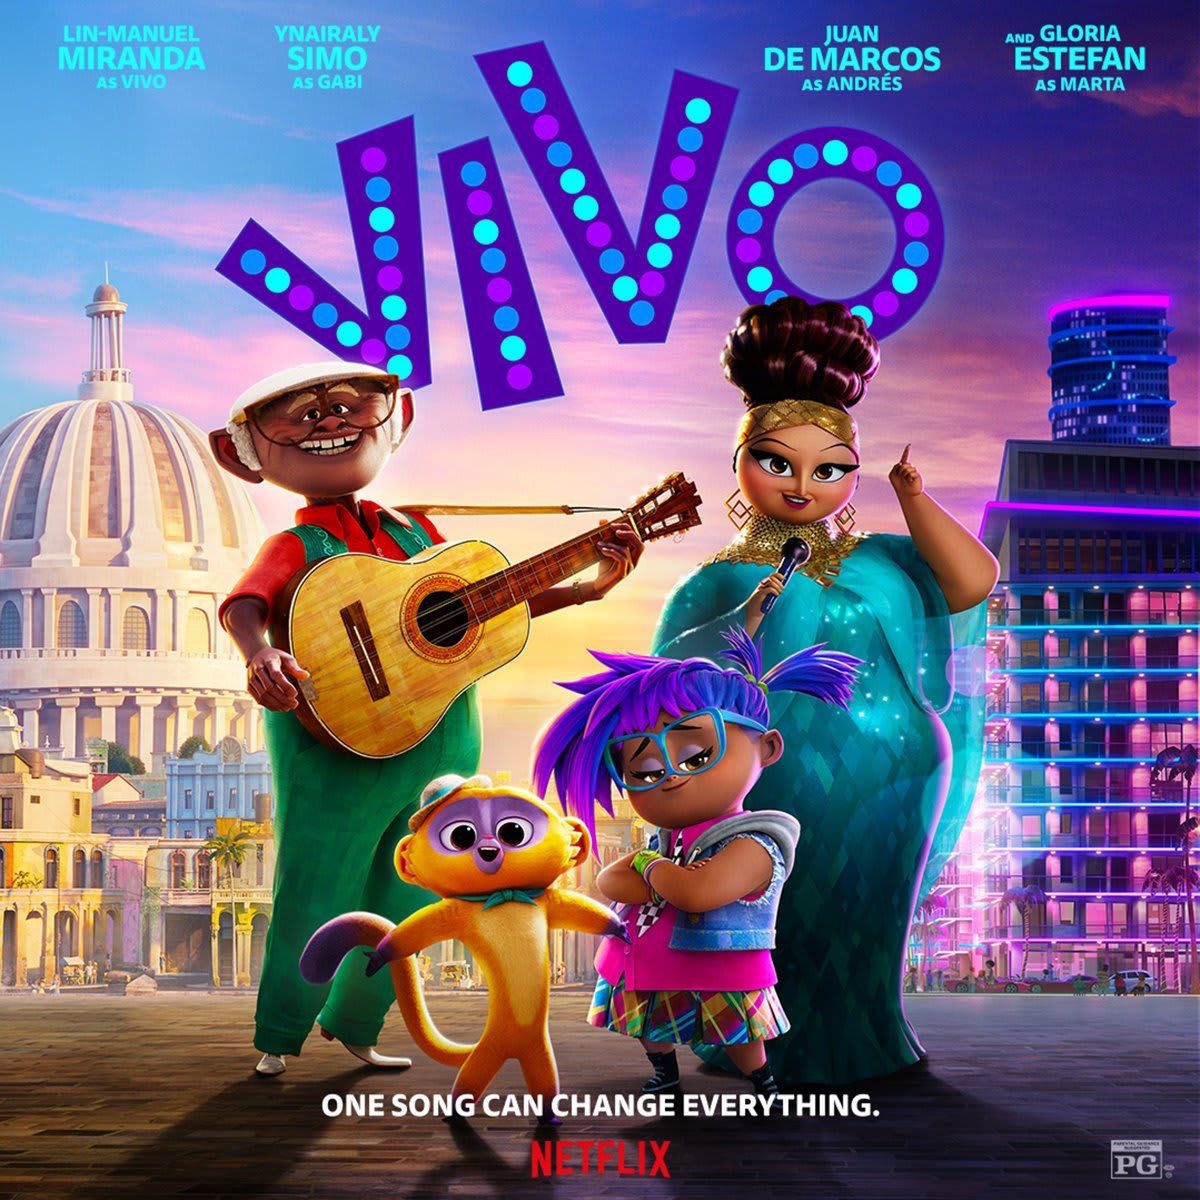 ‘Vivo’ premieres globally on Netflix Aug. 6